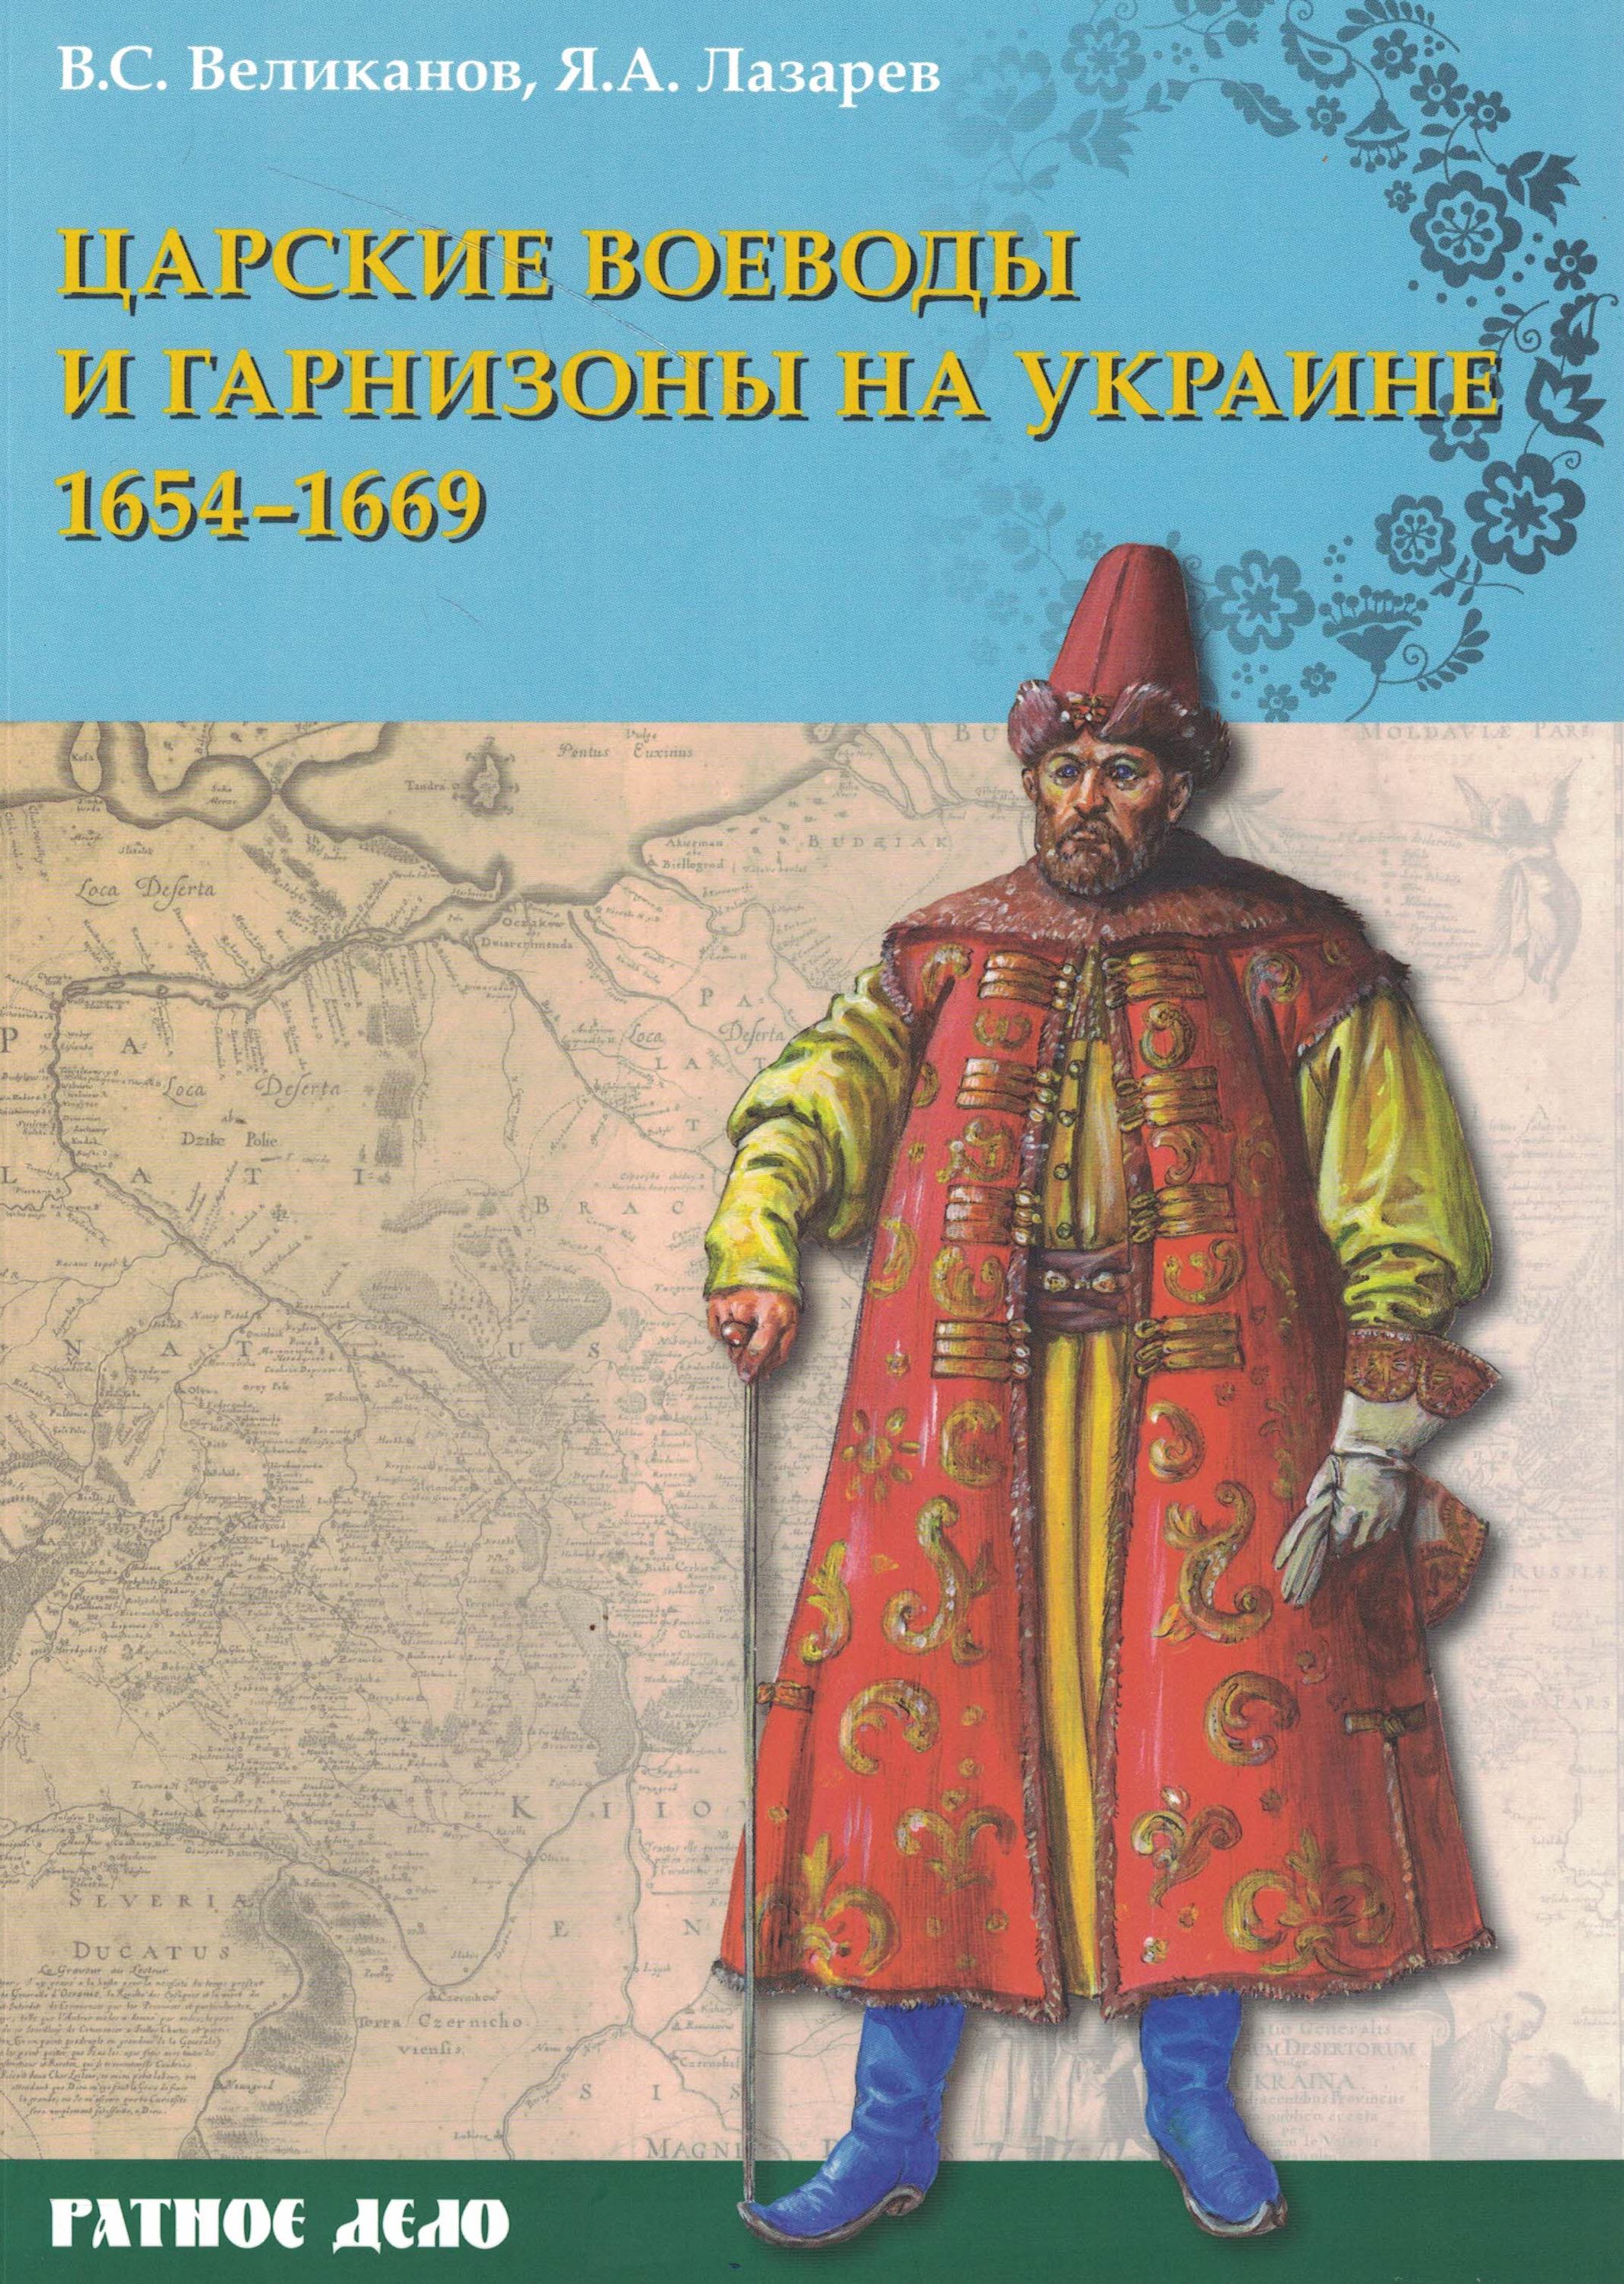 5060635  Великанов В.С.  Царские воеводы и гарнизоны на Украине 1654-1669